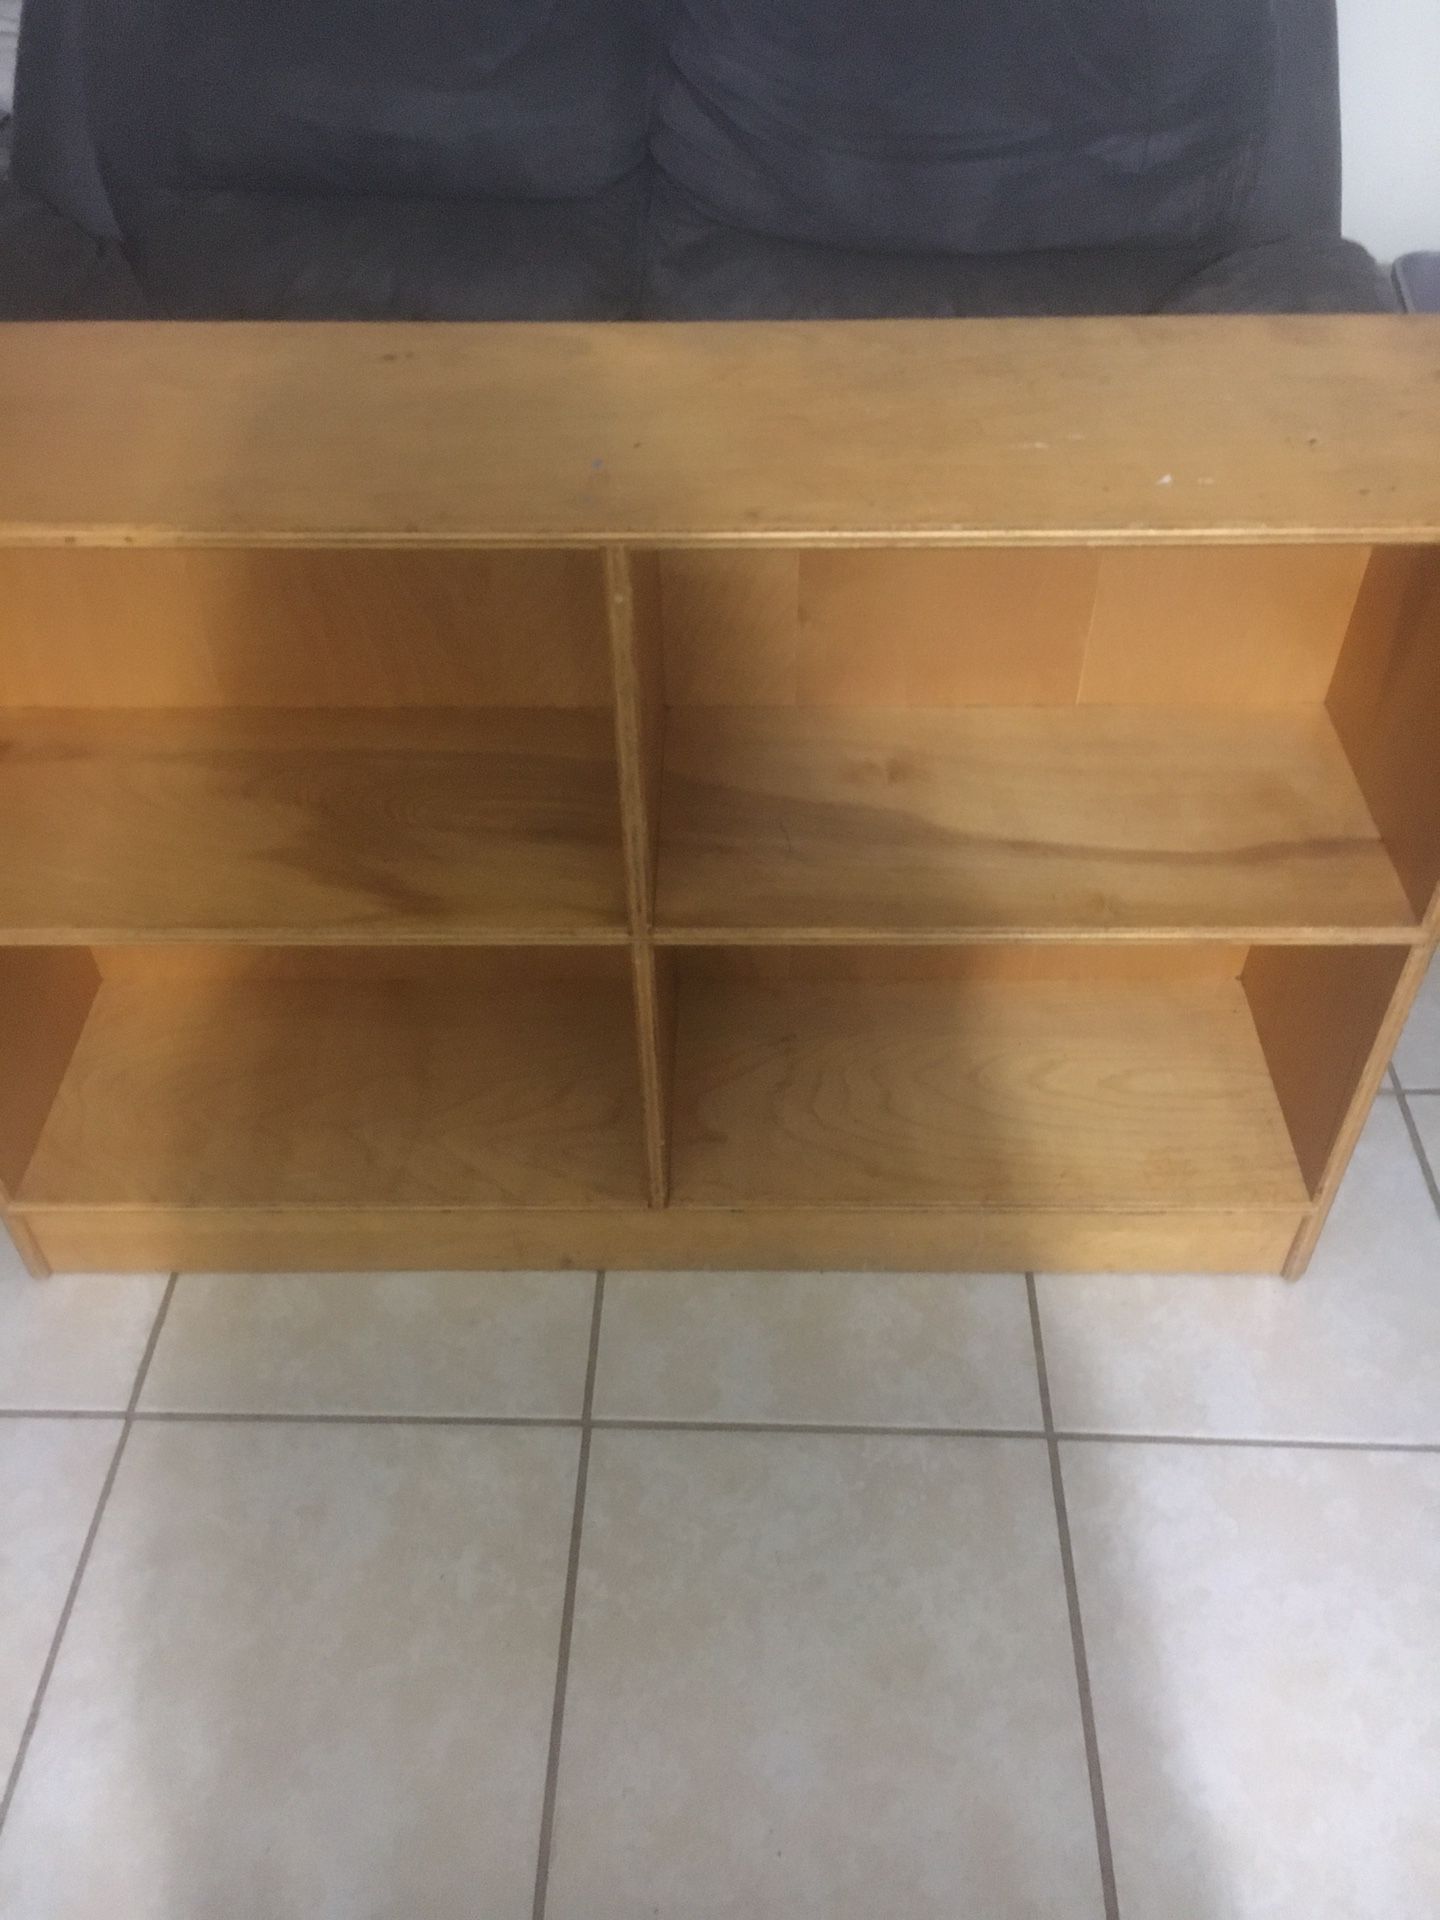 sturdy shelf